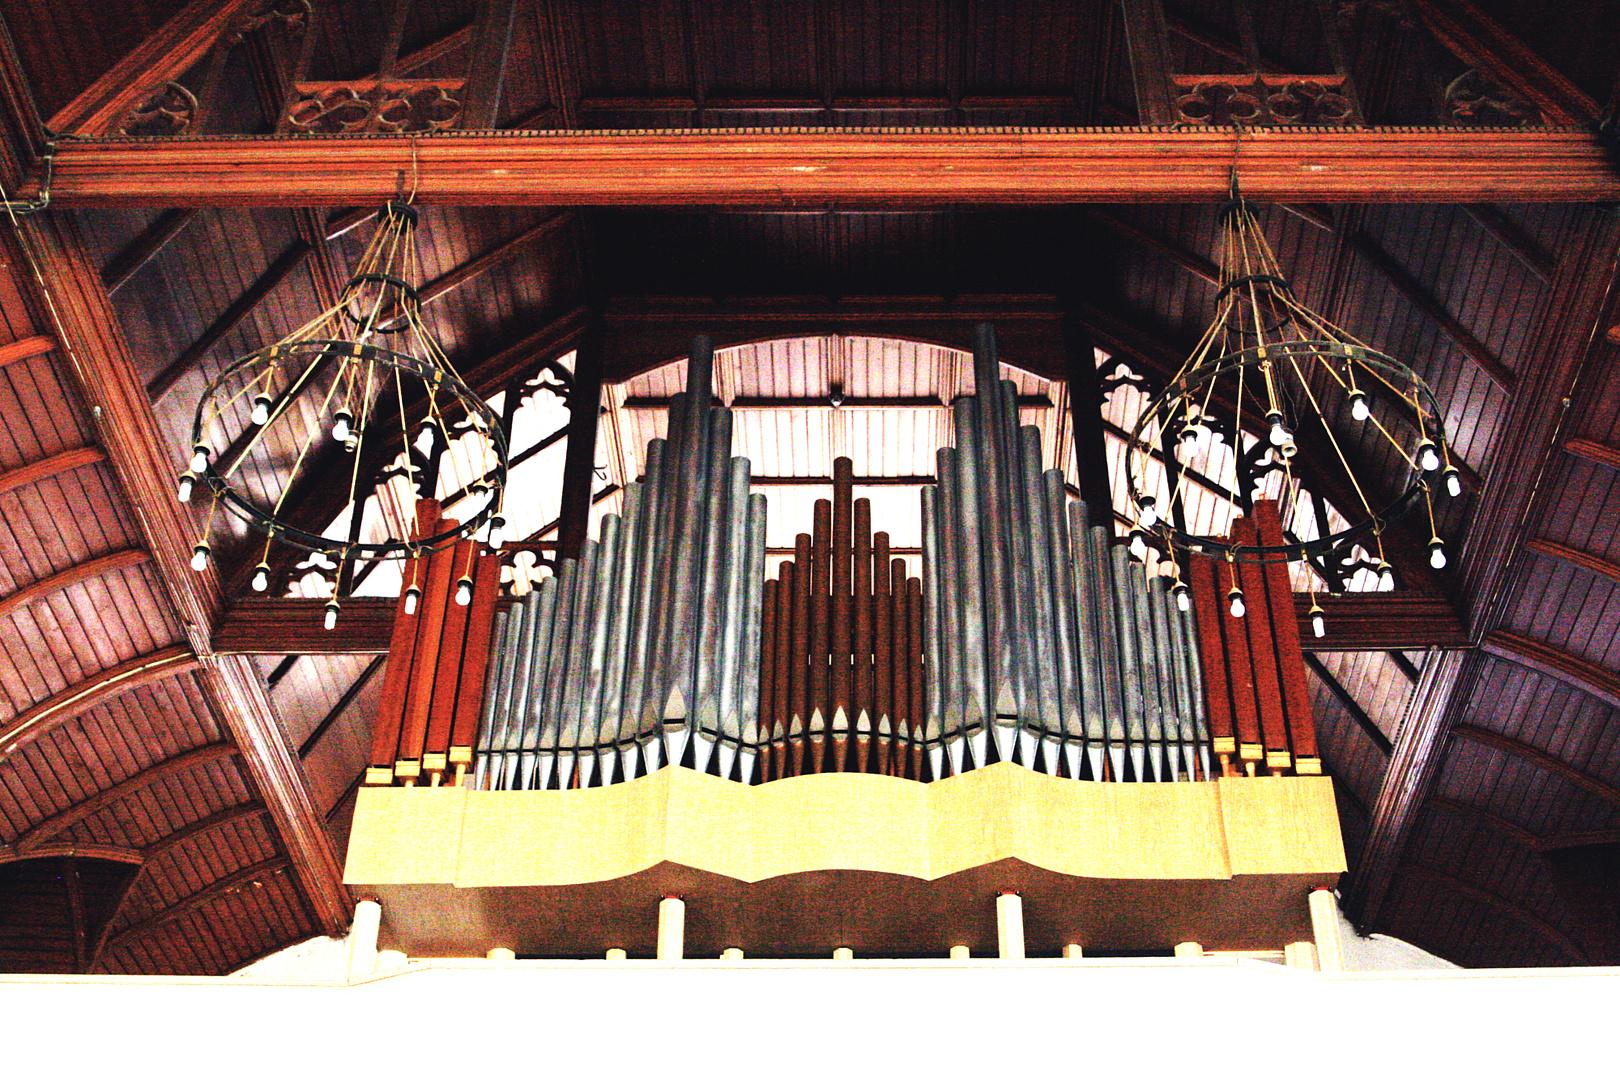 Концерт «Старинный орган Англиканского собора. Картинки с выставки» со скидкой 25%